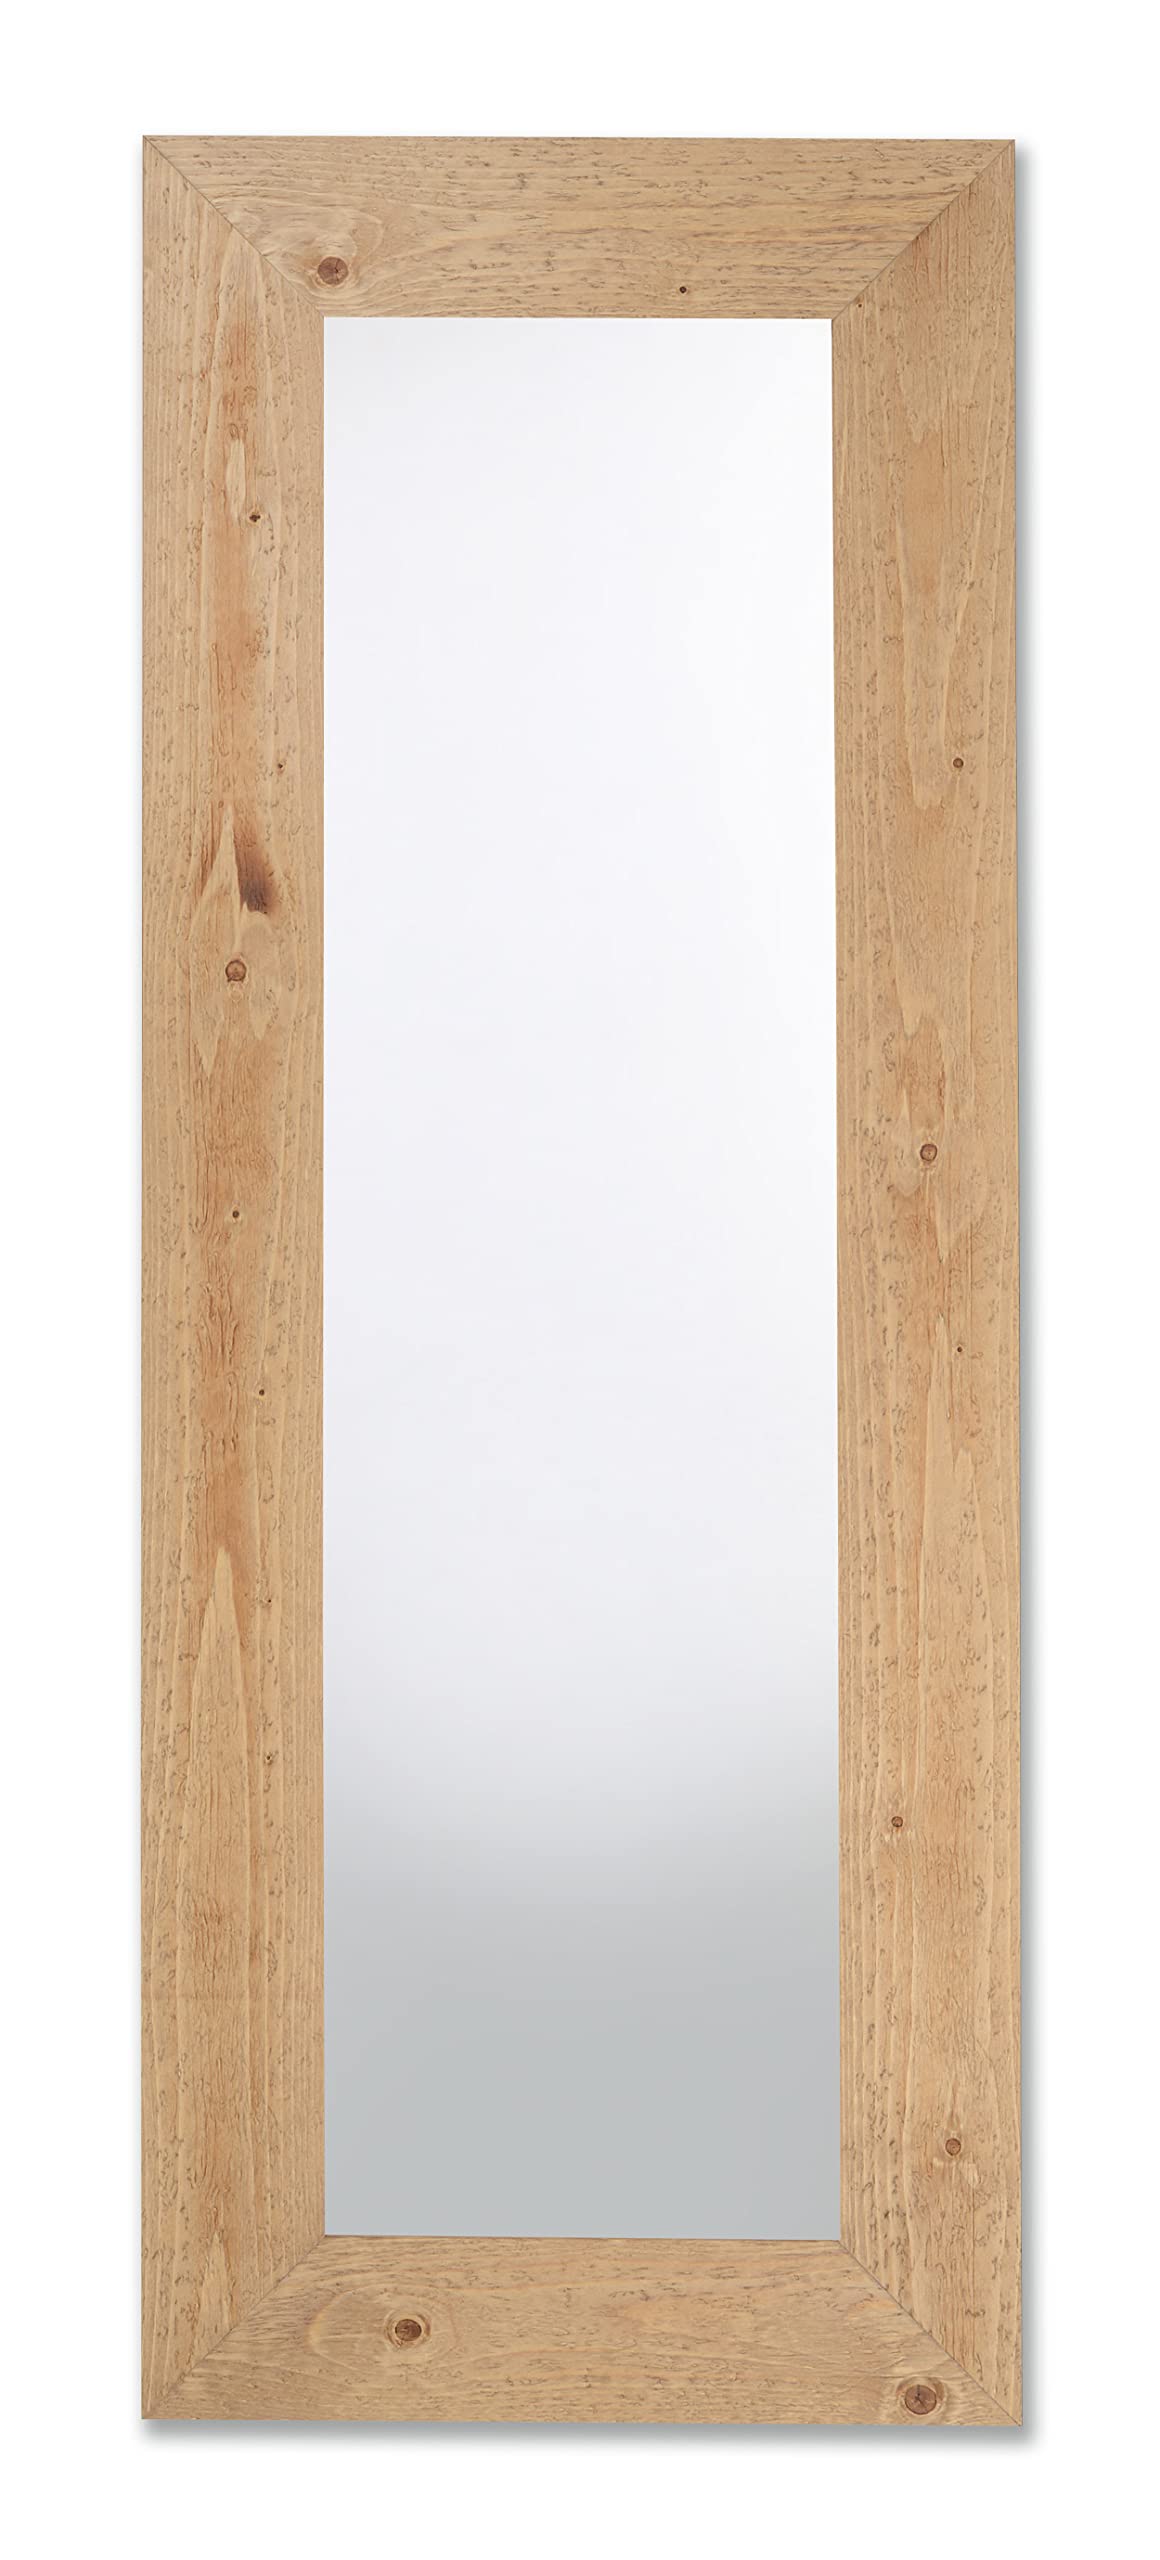 MO.WA Spiegel Wandspiegel 57x147 - Holzspiegel - Ganzkörperspiegel mit Massivholzrahmen Natur - Flurspiegel Ankleidespiegel Eingang Spiegel